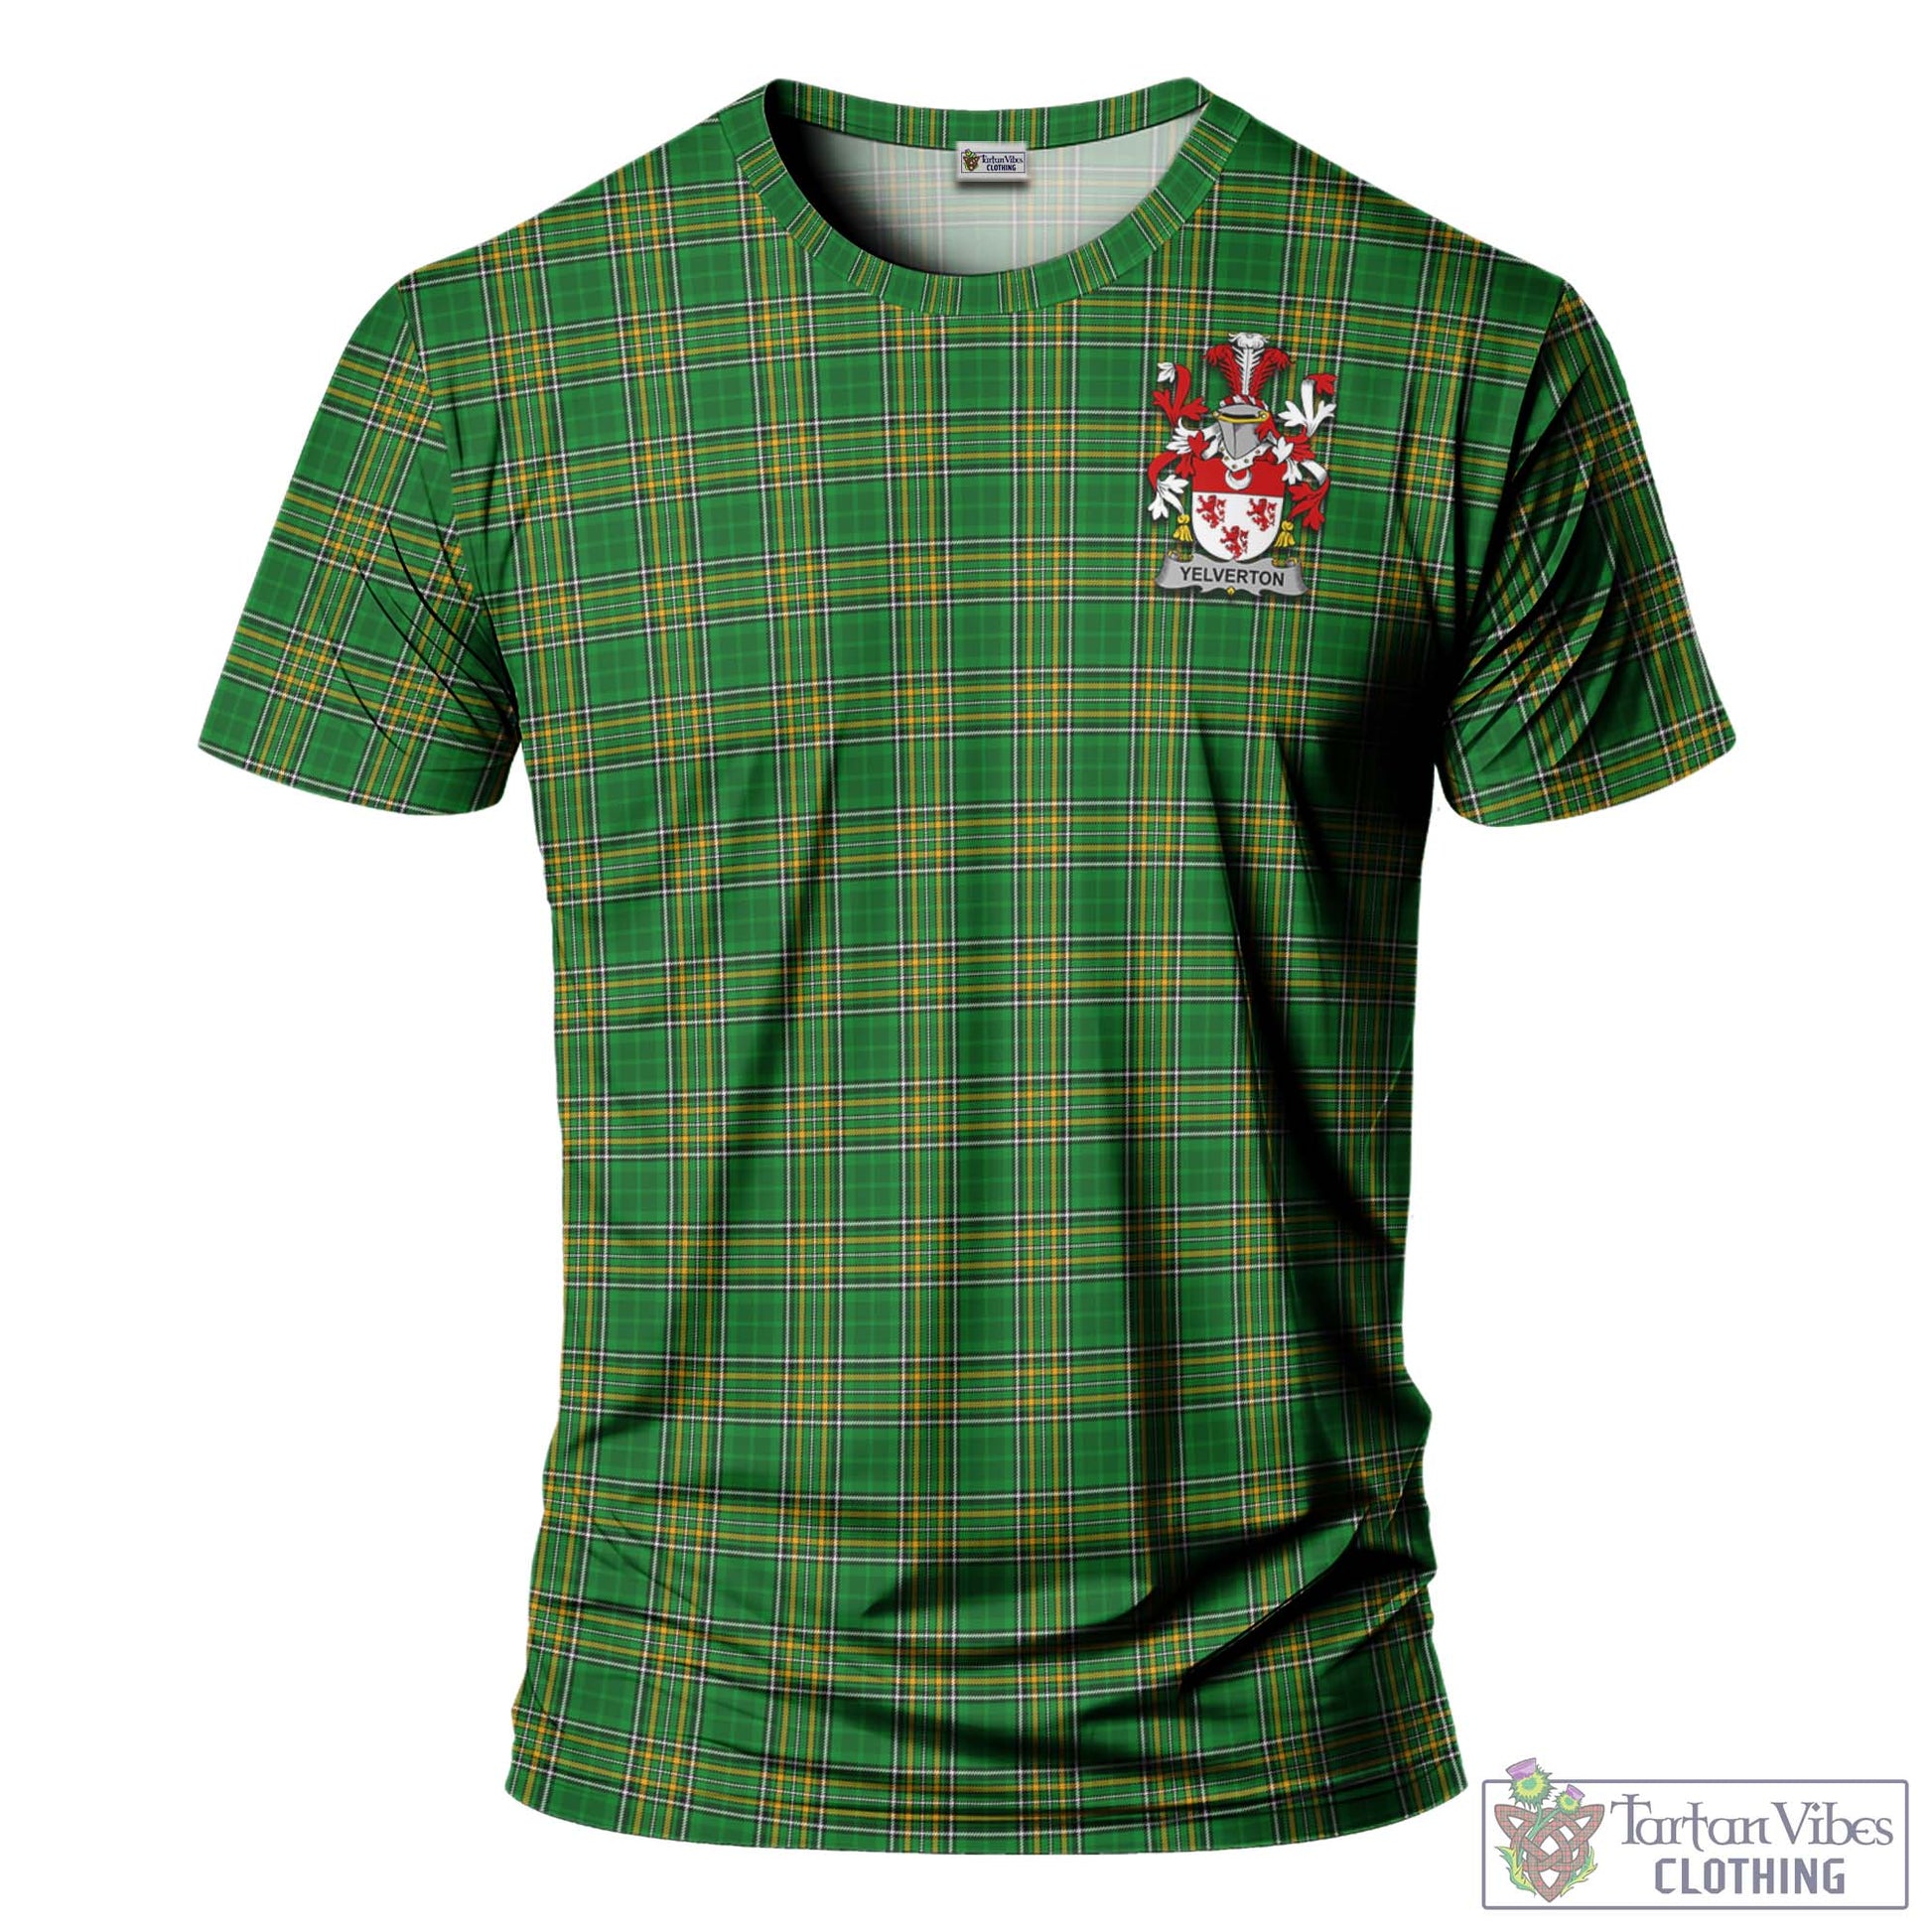 Tartan Vibes Clothing Yelverton Ireland Clan Tartan T-Shirt with Family Seal